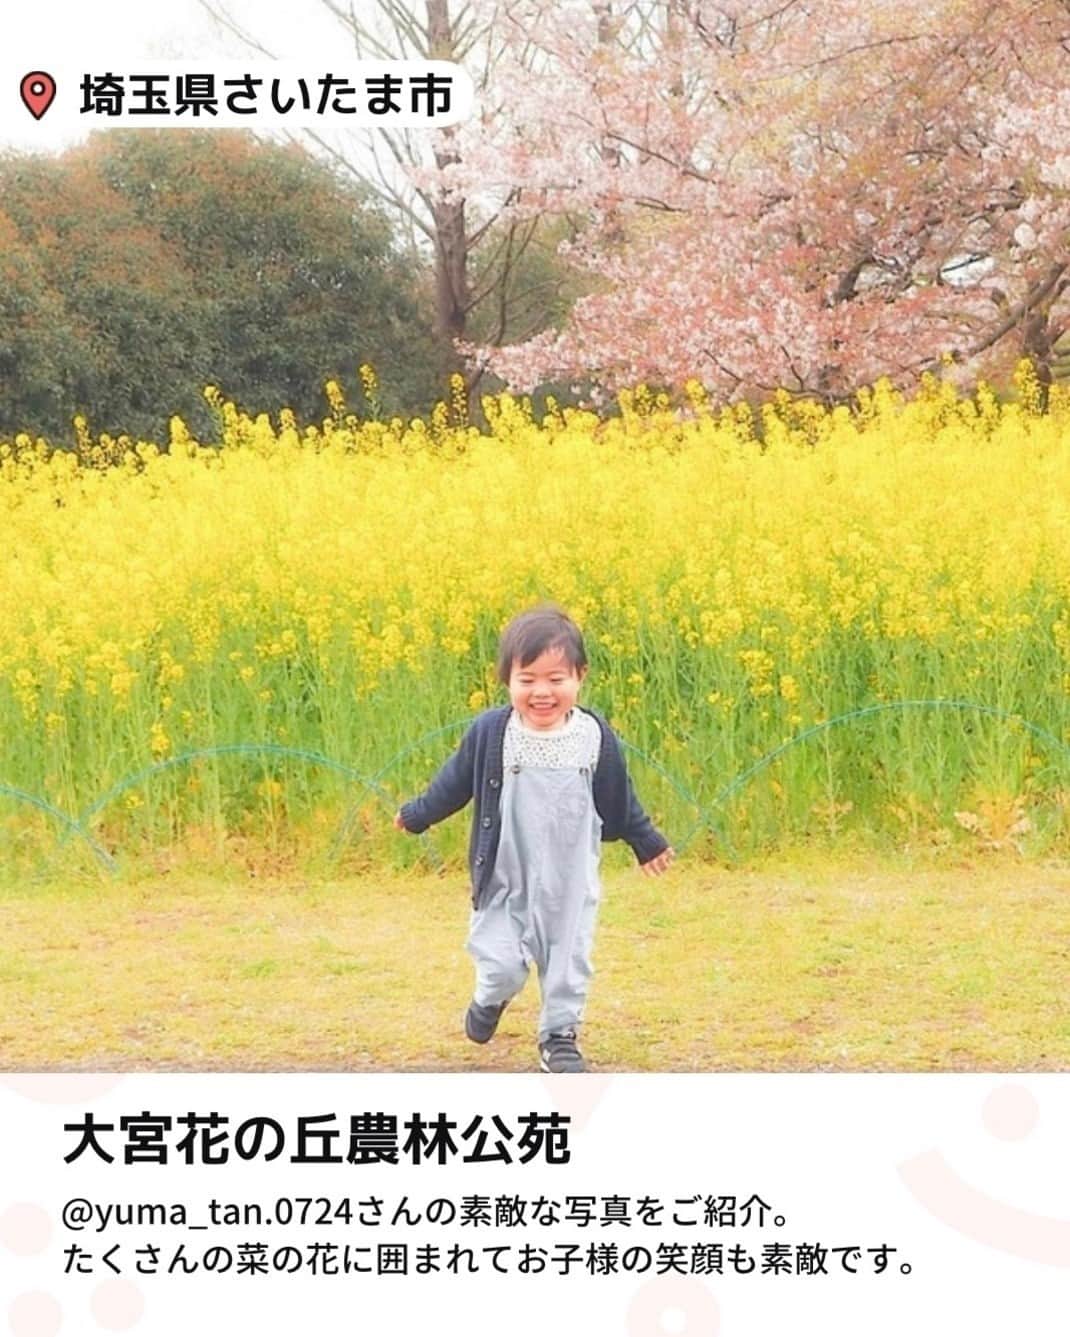 iko-yo（いこーよオフィシャル）さんのインスタグラム写真 - (iko-yo（いこーよオフィシャル）Instagram)「「#いこーよピックアップ写真集 5選」 今回ピックアップしたのは↓ ーーーーーーーーーーーーーーーーーー 📍大阪府高槻市 【#芥川桜堤公園】 高槻市を流れる芥川沿いにある公園で春は桜のお花見スポットとして有名です。毎年4月には大勢の花見客で賑わいを見せ、5月には「鯉のぼりフェスタ」が開催され、約1000尾の鯉のぼりが揚げられます。夏になると川遊びを楽しむことができ、近隣住民の子供たちが大勢集まります。すべり台やスプリング遊具もあるので、幼い子供でも楽しめます。 @k_____eeenonさん、素敵なお写真ありがとうございます！  📍埼玉県さいたま市 【#大宮花の丘農林公苑】 10.9ヘクタールという広大な敷地のうち、3.3ヘクタールが花畑となっており、四季折々の花々が楽しめる公園。なかでも春先に見頃を迎えるチューリップ畑は、赤や白、黄色、ピンクの鮮やかなチューリップが一面に咲き誇り、その春らしい景色をひと目見ようと、多くの人が訪れる人気のおでかけスポットとなります。 @yuma_tan.0724さん、素敵なお写真ありがとうございます！  📍北海道札幌市 【#農試公園】 北海道農業試験場があった場所に作られた公園。夏はちゃぷちゃぷ広場で水遊び、冬はスキーの練習もできる小さな山があるので一年中楽しむことができすね。 レンタル自転車もありサイクリングロードも走れるのが魅力的です。他には交通ルールを学べる「交通コーナー」ガリバーの形をした遊具、工具類が無料で借りられ自由に工作できる「トンカチ広場」もありますよ。 @guriguracamoさん、素敵なお写真ありがとうございます！  📍 北海道斜里町 【#夕陽台】 夕陽台は、知床世界遺産の知床八景に数えられる夕陽の名所です。 ここからの夕陽はとても美しく、オホーツク海が赤く染まる光景は絶景そのものです。こちらは四季を通して利用できるので、流氷と夕陽のコントラストも見ることができます。 @t0m0mi0920さん、素敵なお写真ありがとうございます！  📍東京都荒川区 【#汐入公園】 「豊かで多様な水辺と緑に彩られた、活力と潤いのある川辺のひろば公園」を基本テーマとした公園。展望広場、ふれあい広場、ピクニック広場や多目的広場など多様な広場とともに、テニスコート等のスポーツ施設や野外ステージ、噴水、日時計、複合遊具、バーベキュー広場等を設け、のびのびと楽しめる安全な広場公園となっています。 @cha.n62さん素敵なお写真ありがとうございます！  ※2023年5月22日時点の情報です。 最新の情報は公式HPや「いこーよ」サイトでご確認ください。 ーーーーーーーーーーーーーーーーーーー おでかけ情報量は日本最大級！ 子どもとお出かけ情報サイト「いこーよ」 「親子でおでかけしたい場所」をご紹介させていただいています！  お子さんとのおでかけの思い出の写真を、このアカウントをフォローの上#いこーよ #いこーよおでかけ部 をつけてぜひ投稿してください。魅力的な写真は、いこーよ公式SNSで紹介させていただきます！  募集中タグ#いこーよ #いこーよおでかけ部  「子どもと行きたい！」と思ったら保存が便利！ プロフィールのURLから「いこーよ」のサイトに行くと、他の投稿やオトクな情報などが載っています♪ ☞ @ikoyo_odekake  #お出かけ #おでかけ #お出かけスポット #子連れ #こどものいる暮らし #子連れスポット#カメラママ#ママフォトグラファー #いこーよおでかけ部 #札幌ママ #札幌観光 #札幌旅行  #さいたまママ #さいたま旅行  #お花見 #ピクニック #夕陽  #夏休み #三連休」6月8日 19時01分 - ikoyo_odekake